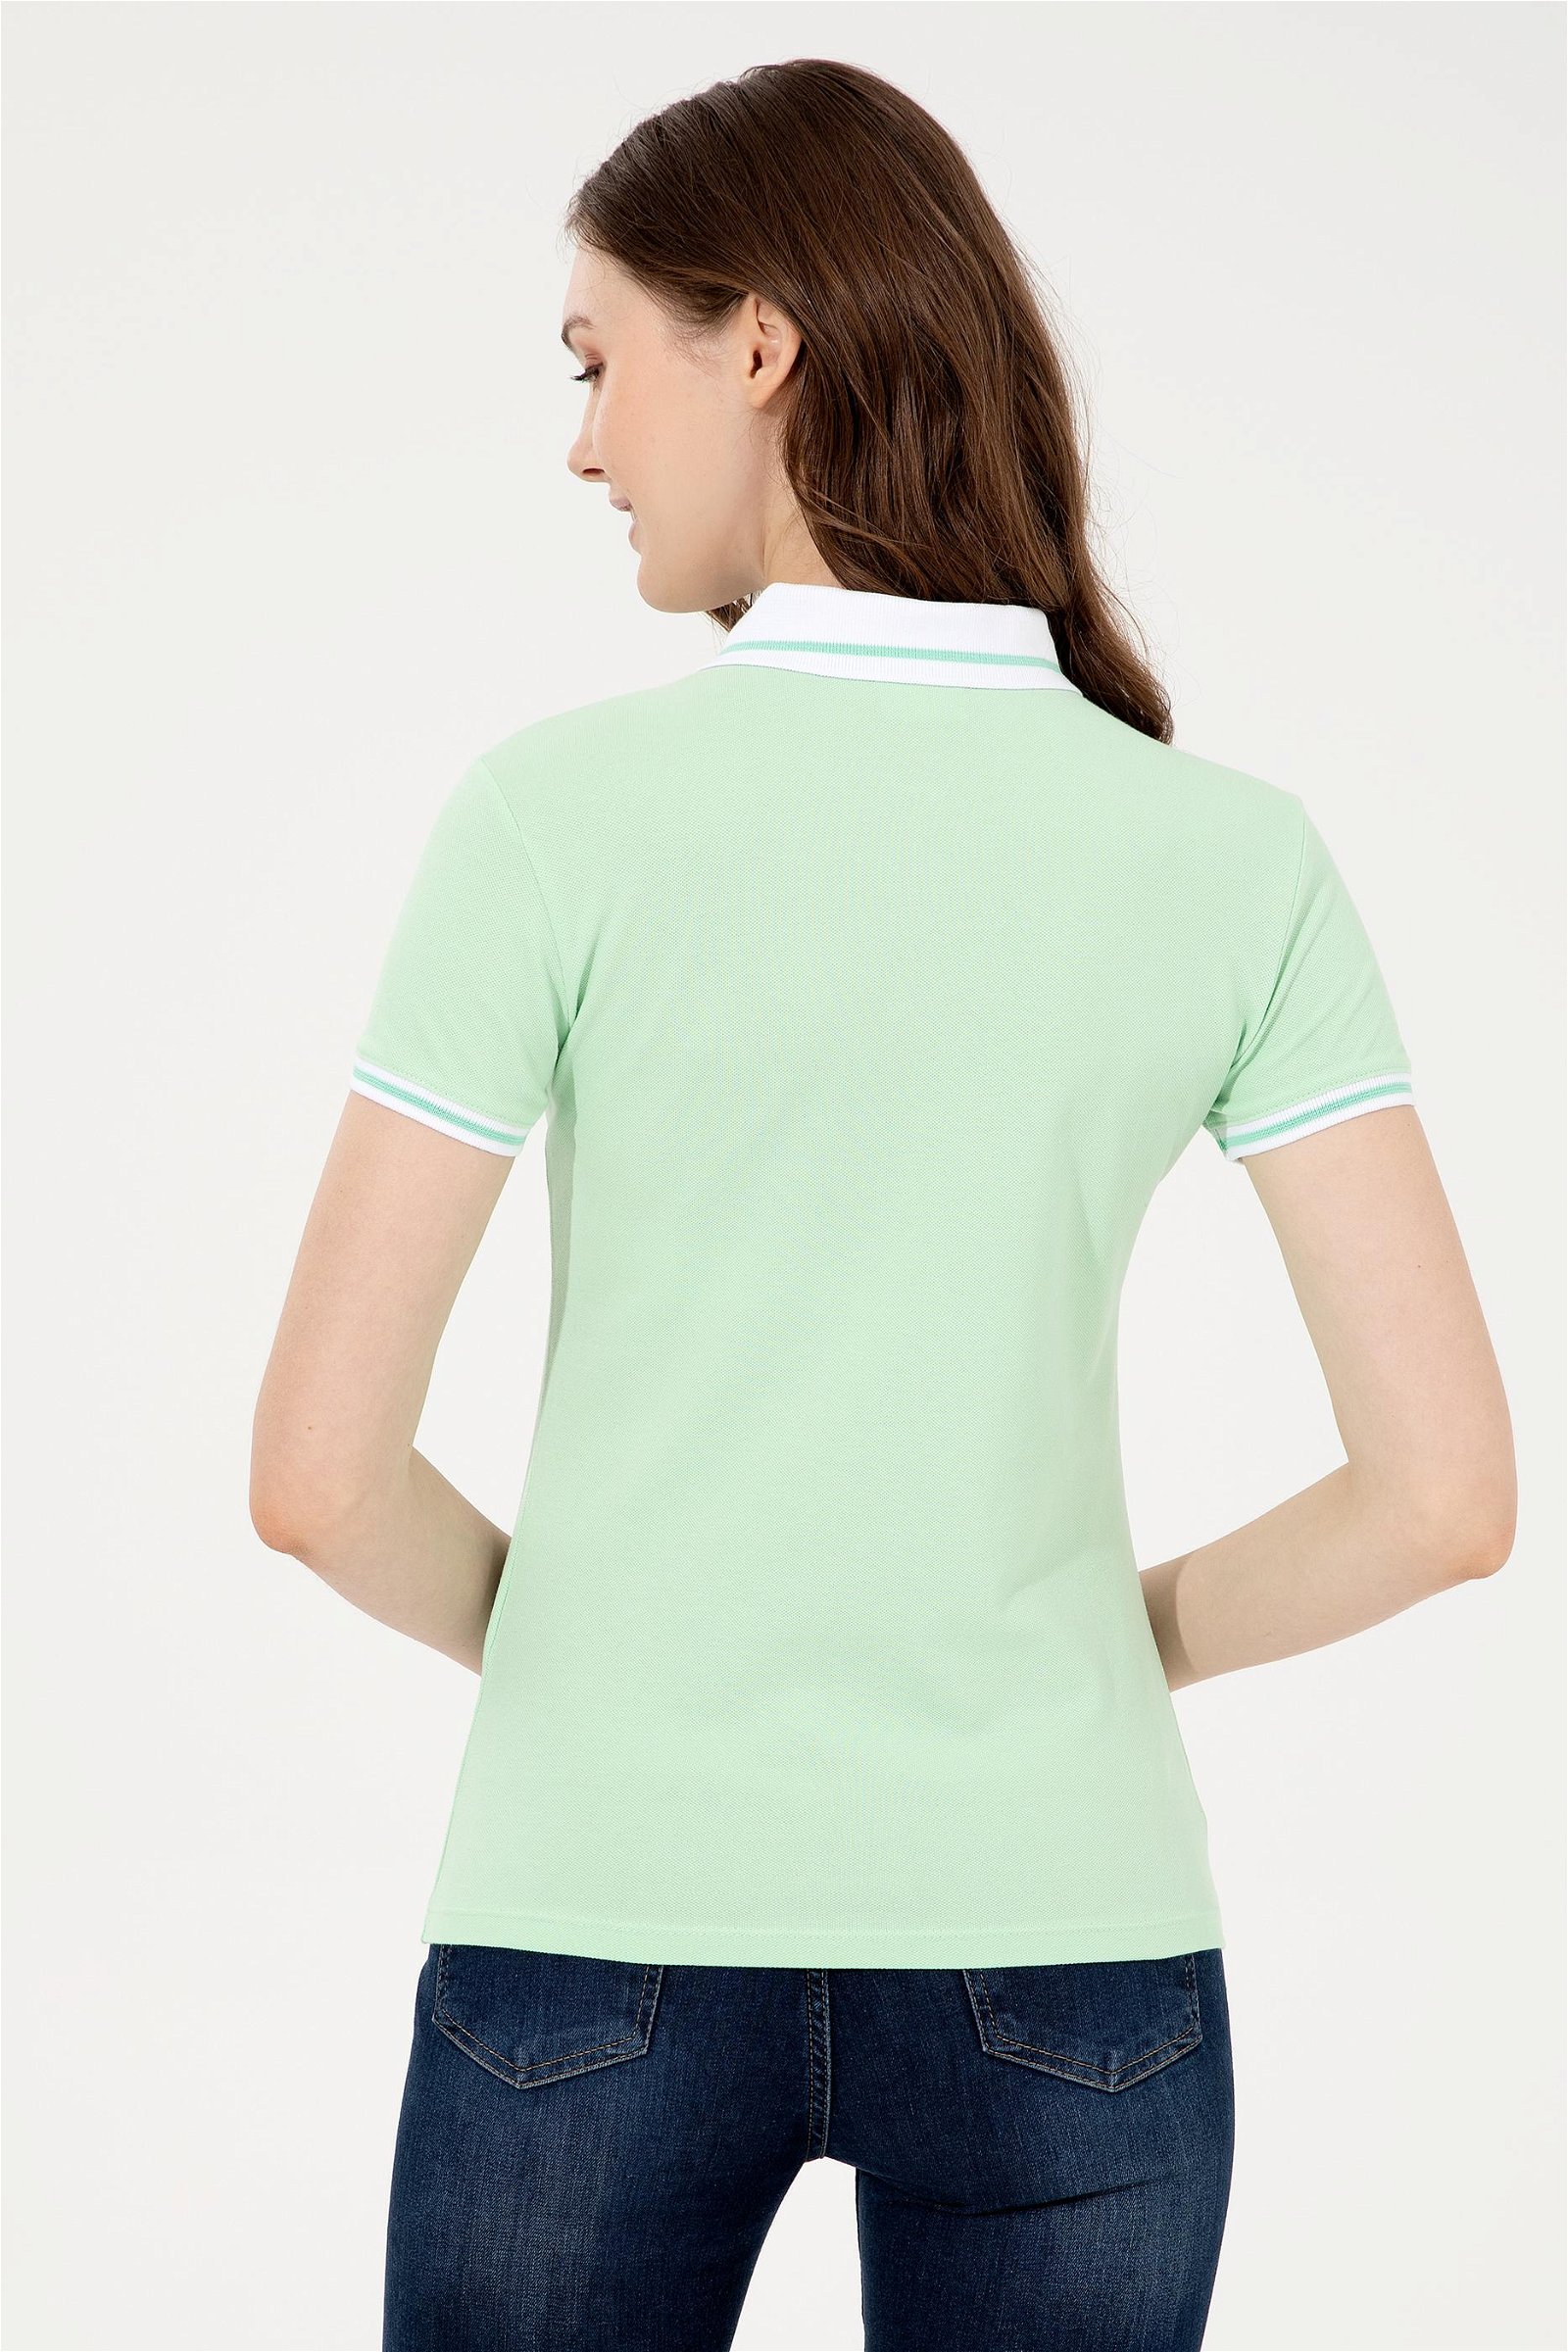 Kadın Mint Yeşili Polo Yaka T-Shirt